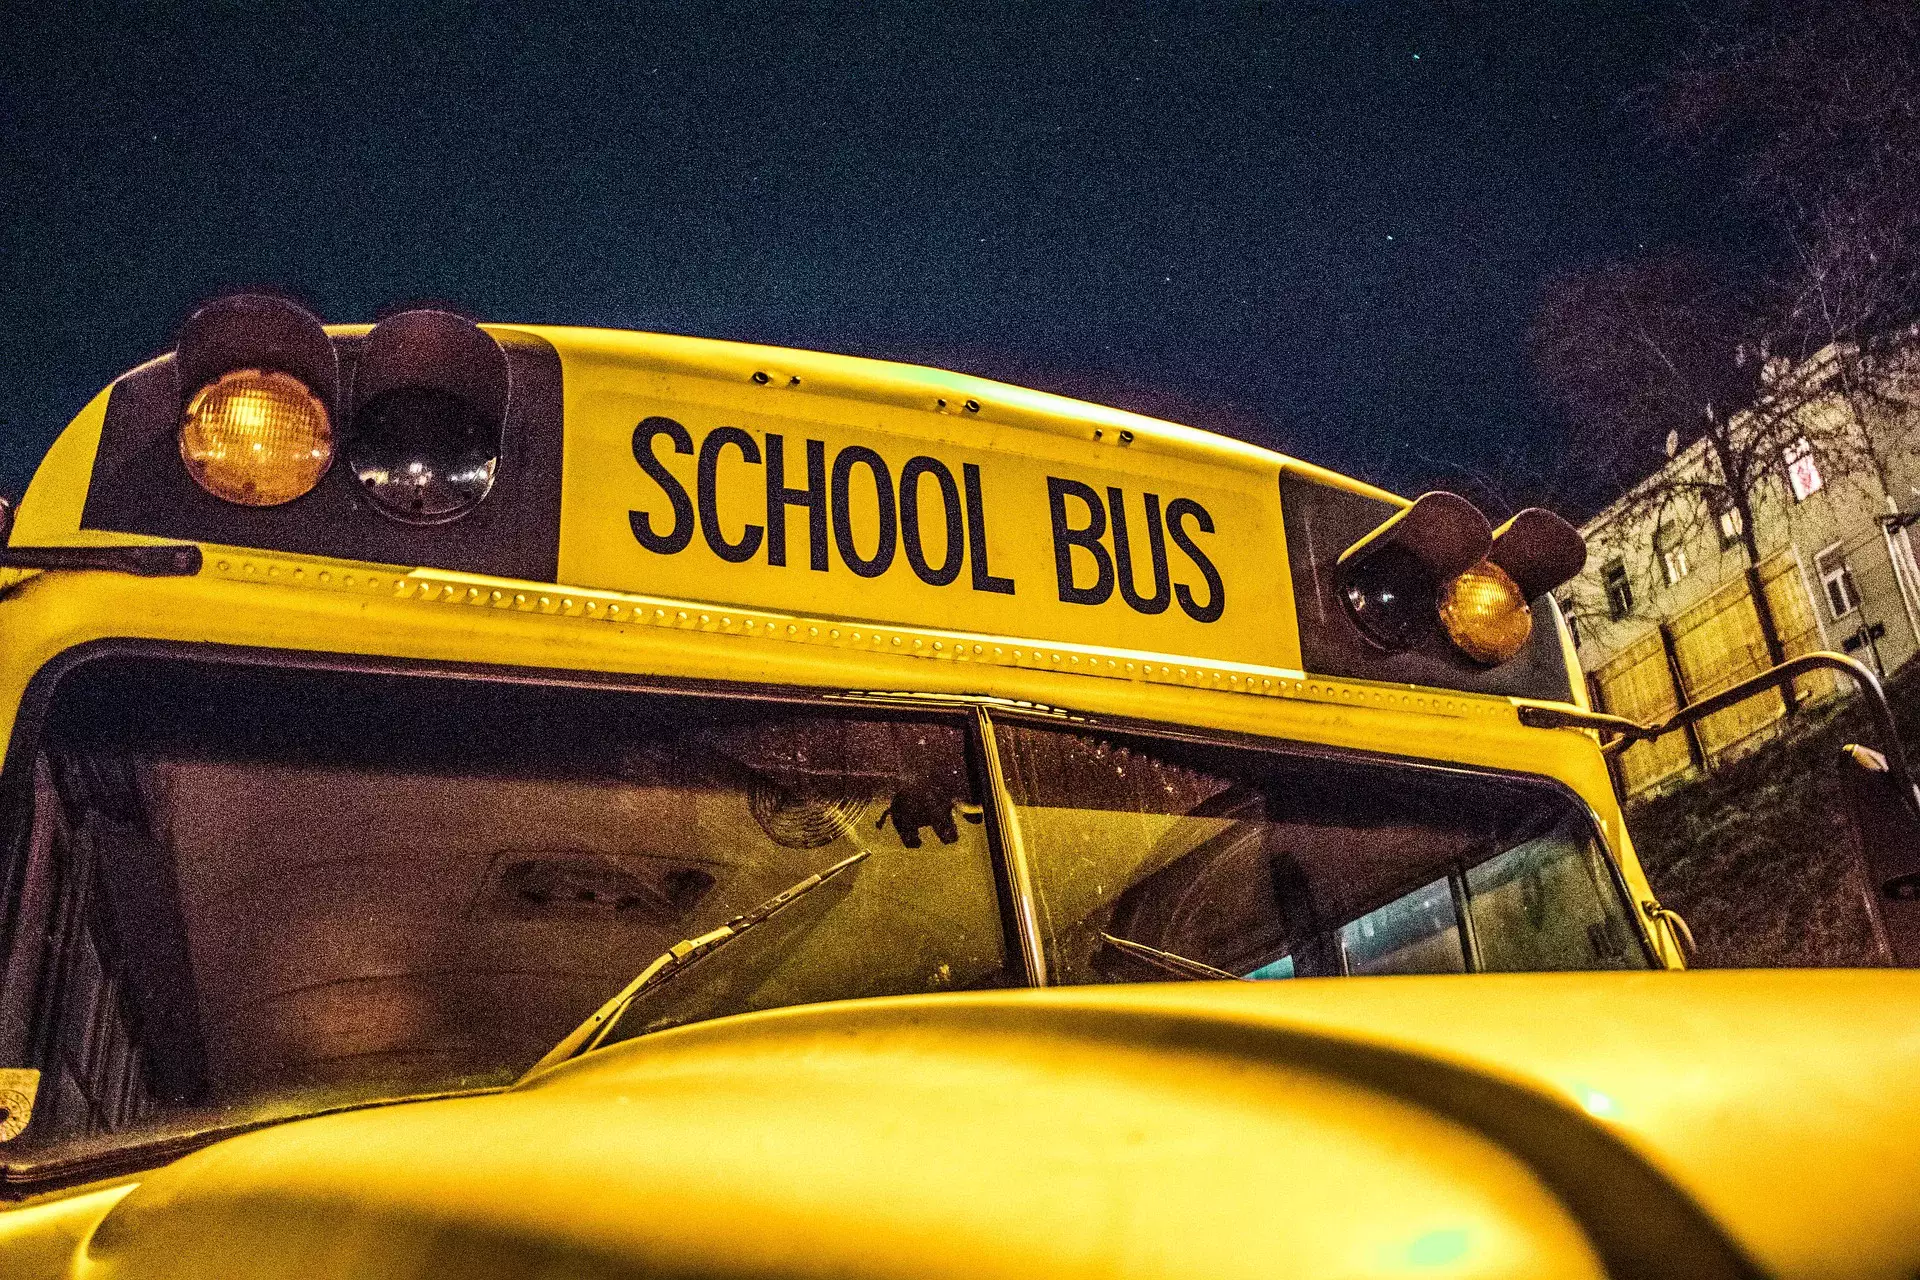 10 из 19 школьных автобусов в Таразе не отвечают требованиям безопасности